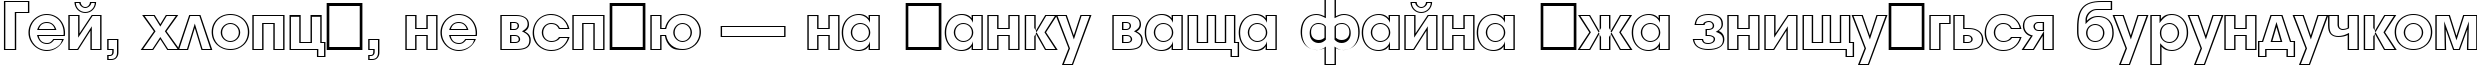 Пример написания шрифтом a_AvanteOtl Heavy текста на украинском